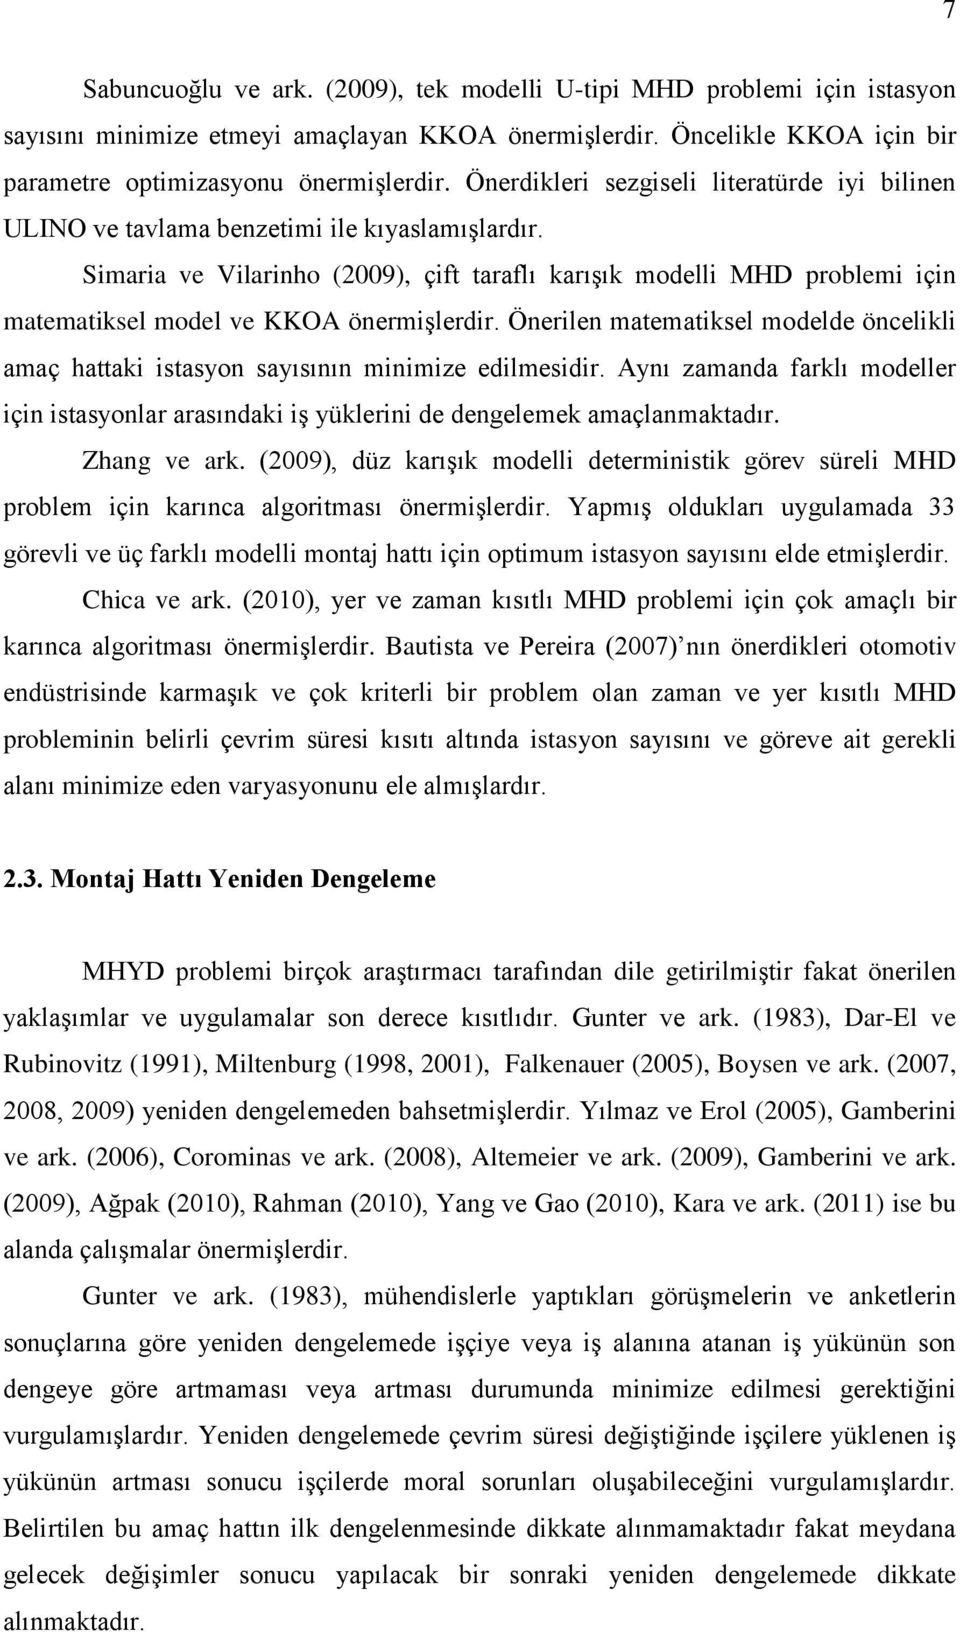 Simaria ve Vilarinho (2009), çift taraflı karıģık modelli MHD problemi için matematiksel model ve KKOA önermiģlerdir.